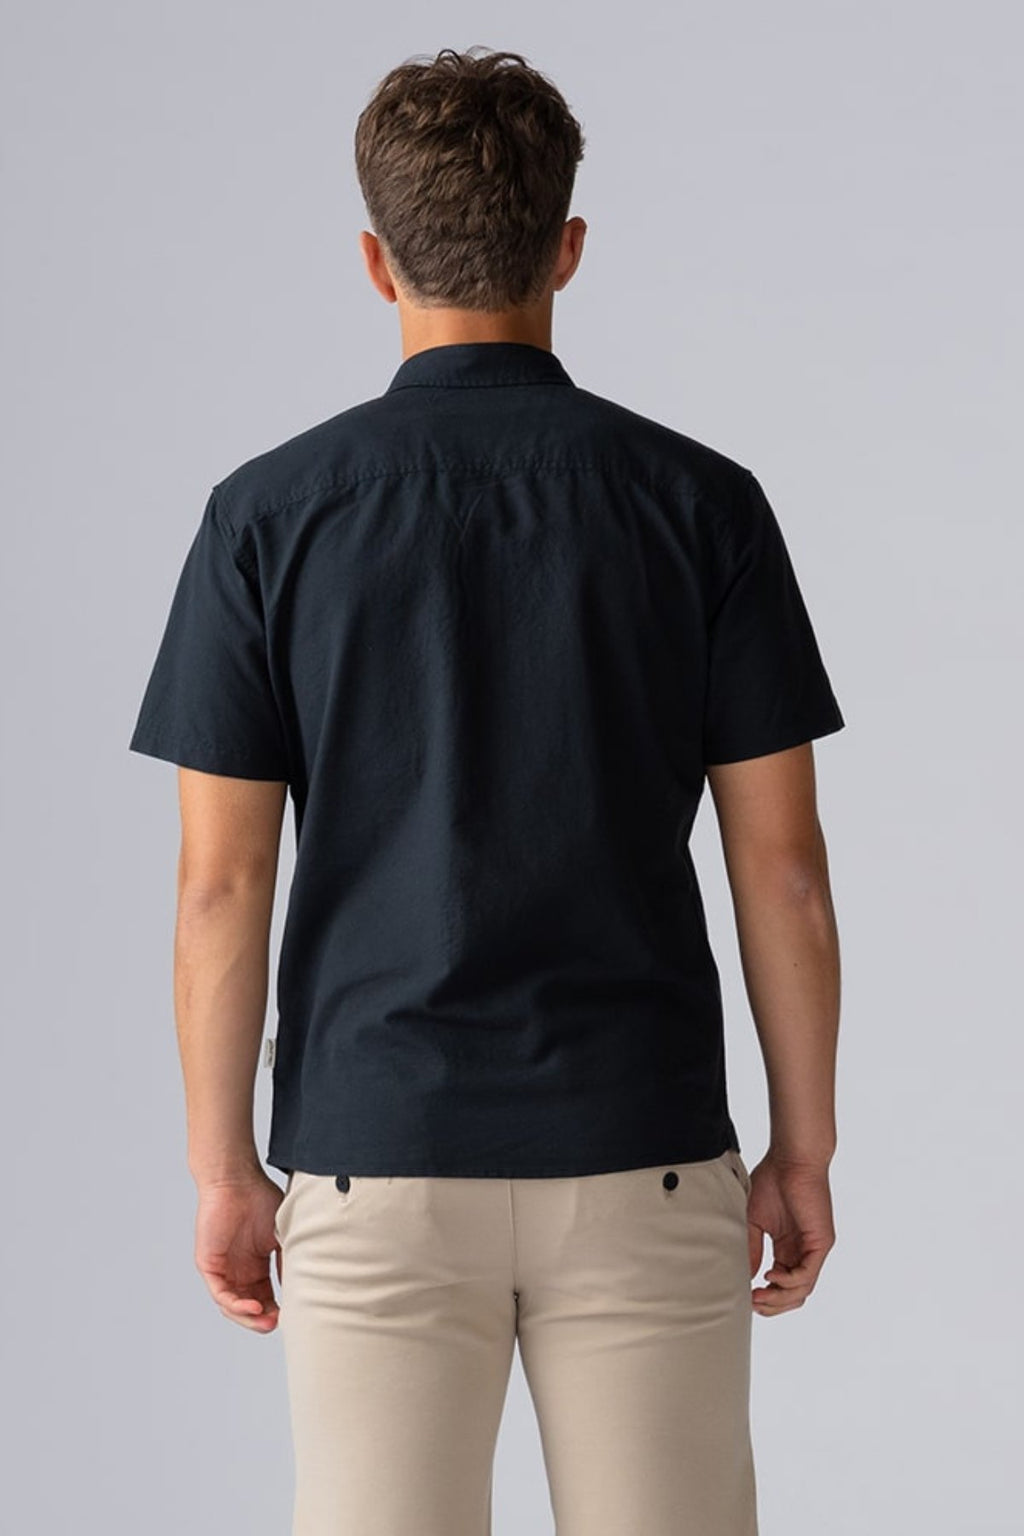 Λινό πουκάμισο με κοντά μανίκια - Μαύρο